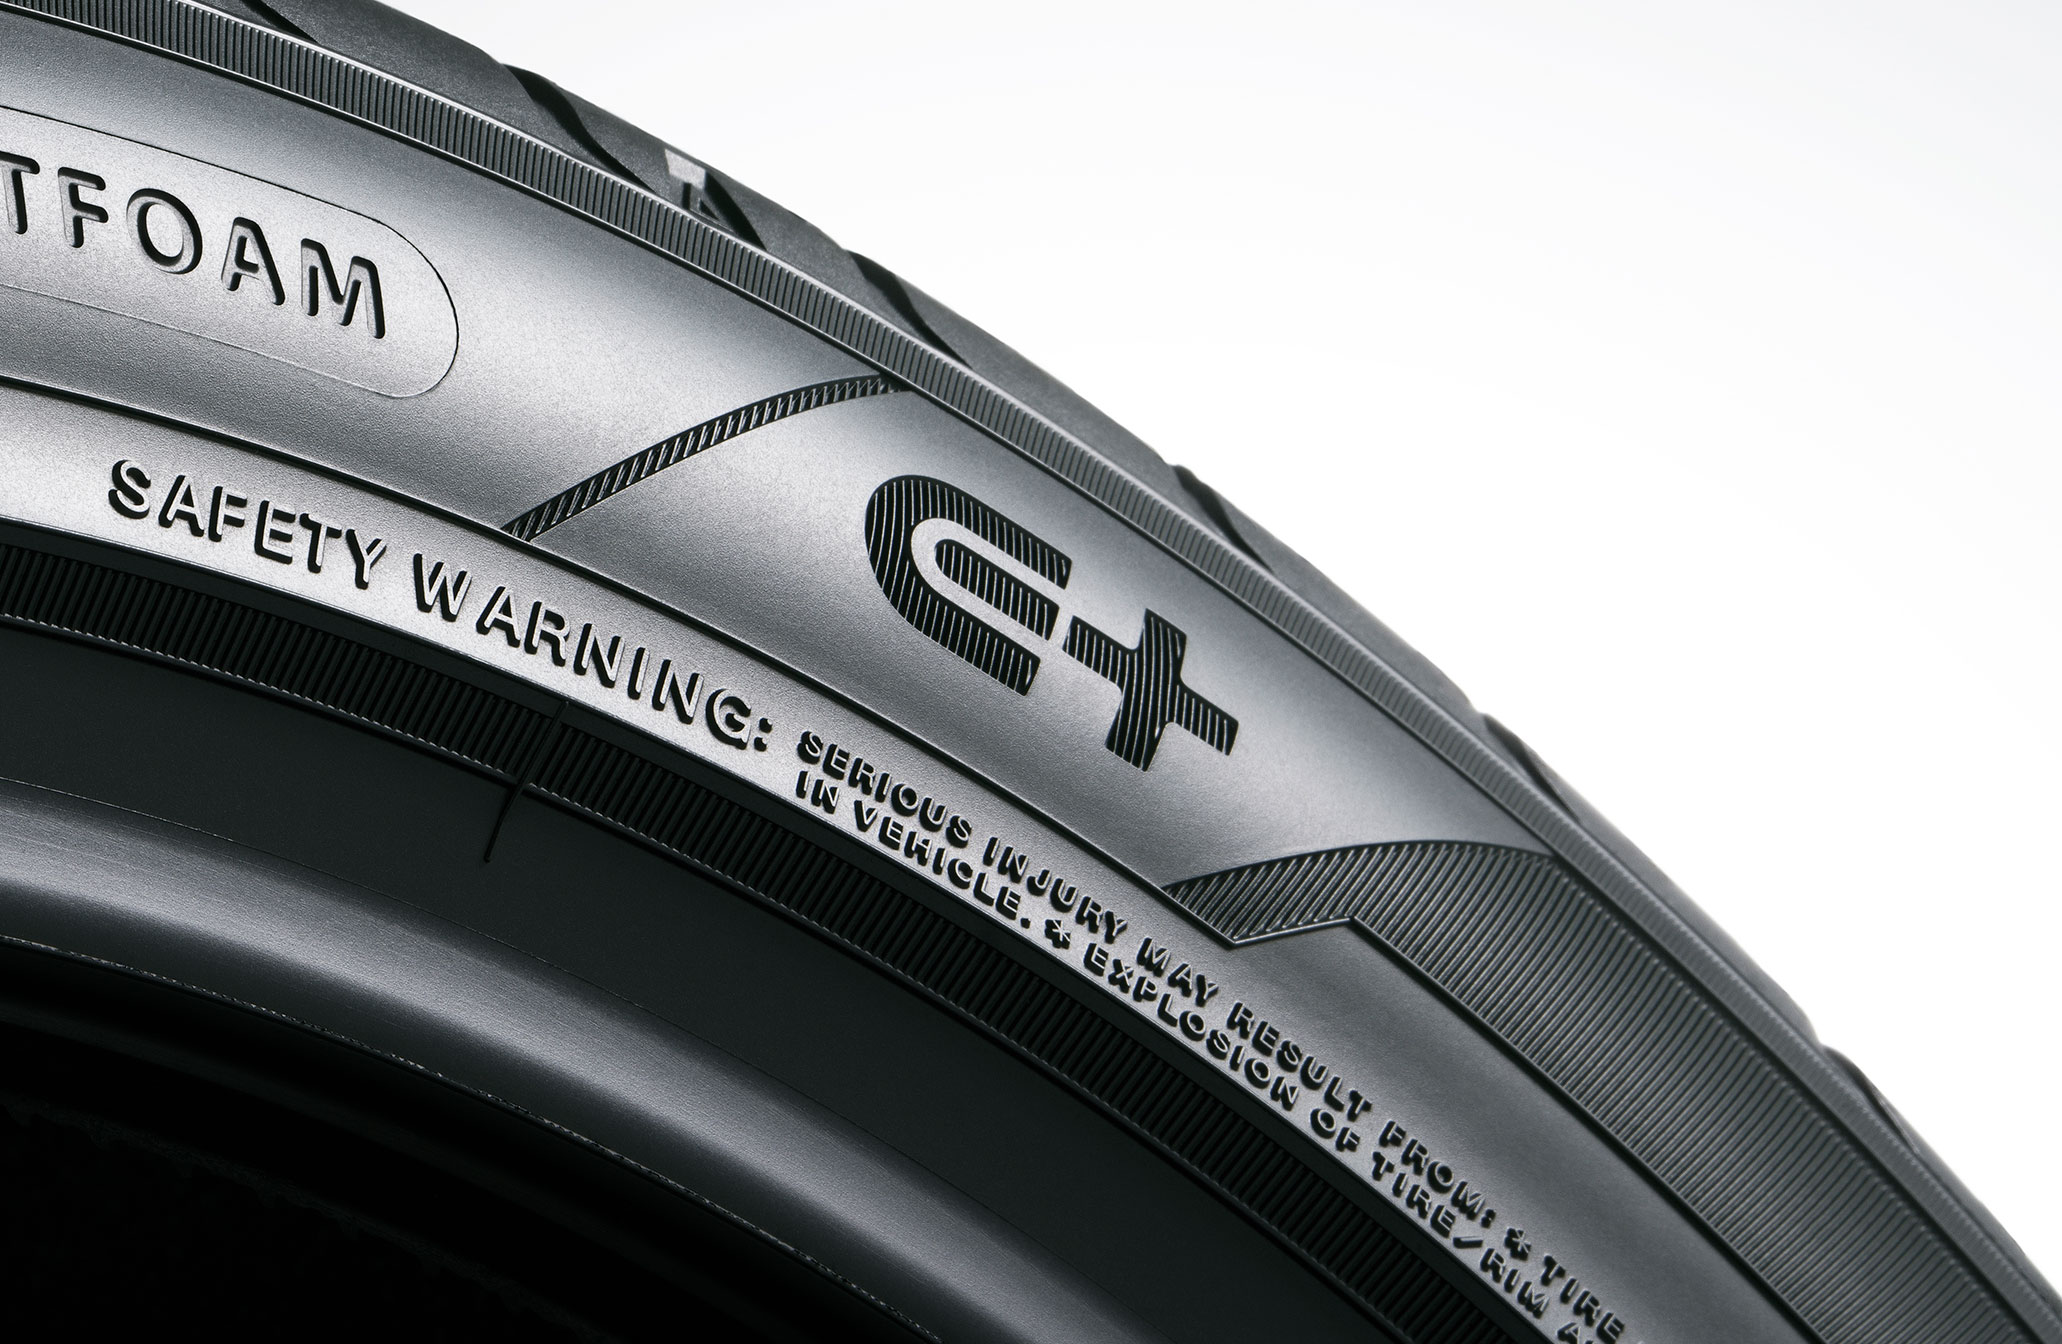 Llantas Yokohama presenta “E+”, una marca patentada que se aplicará a sus neumáticos con las cualidades que necesitan los vehículos eléctricos